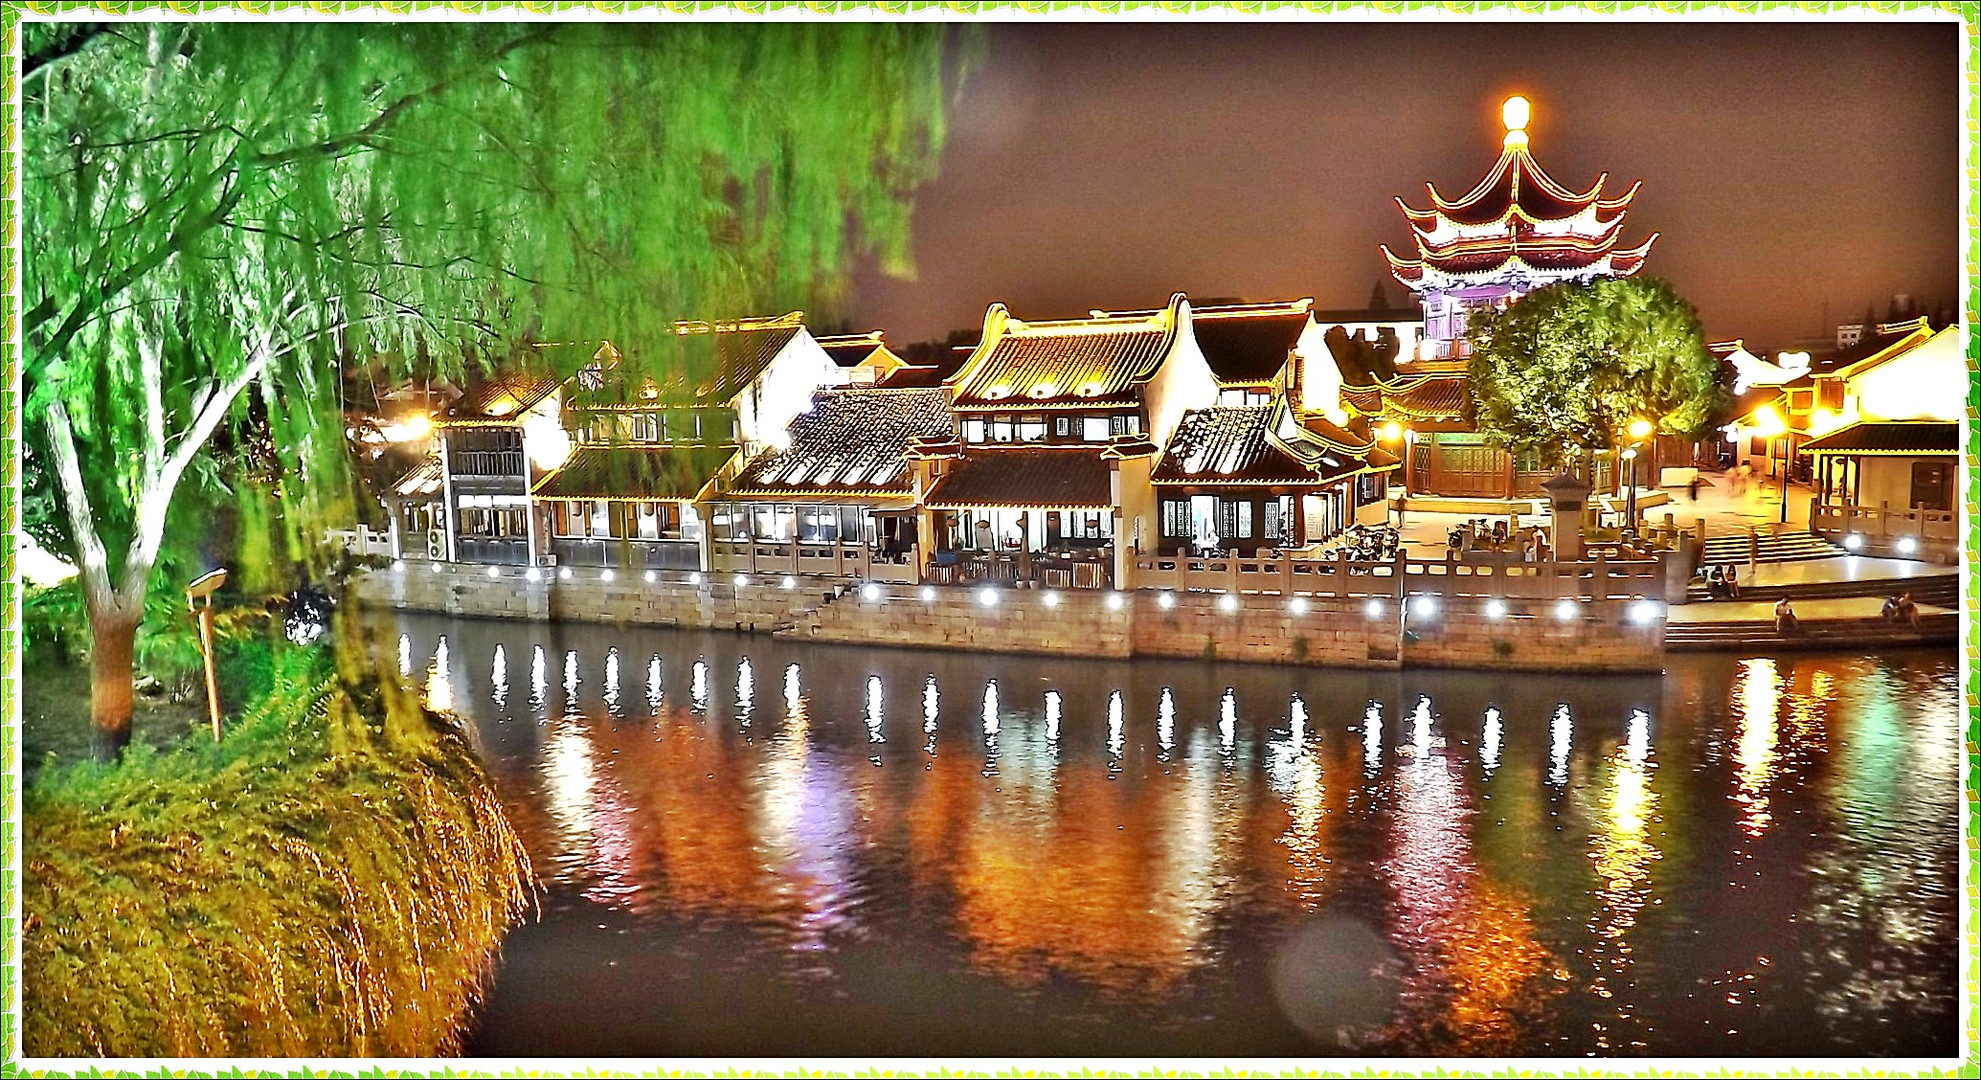 nachts in der malerischen Altstadt von Su Zhou ;